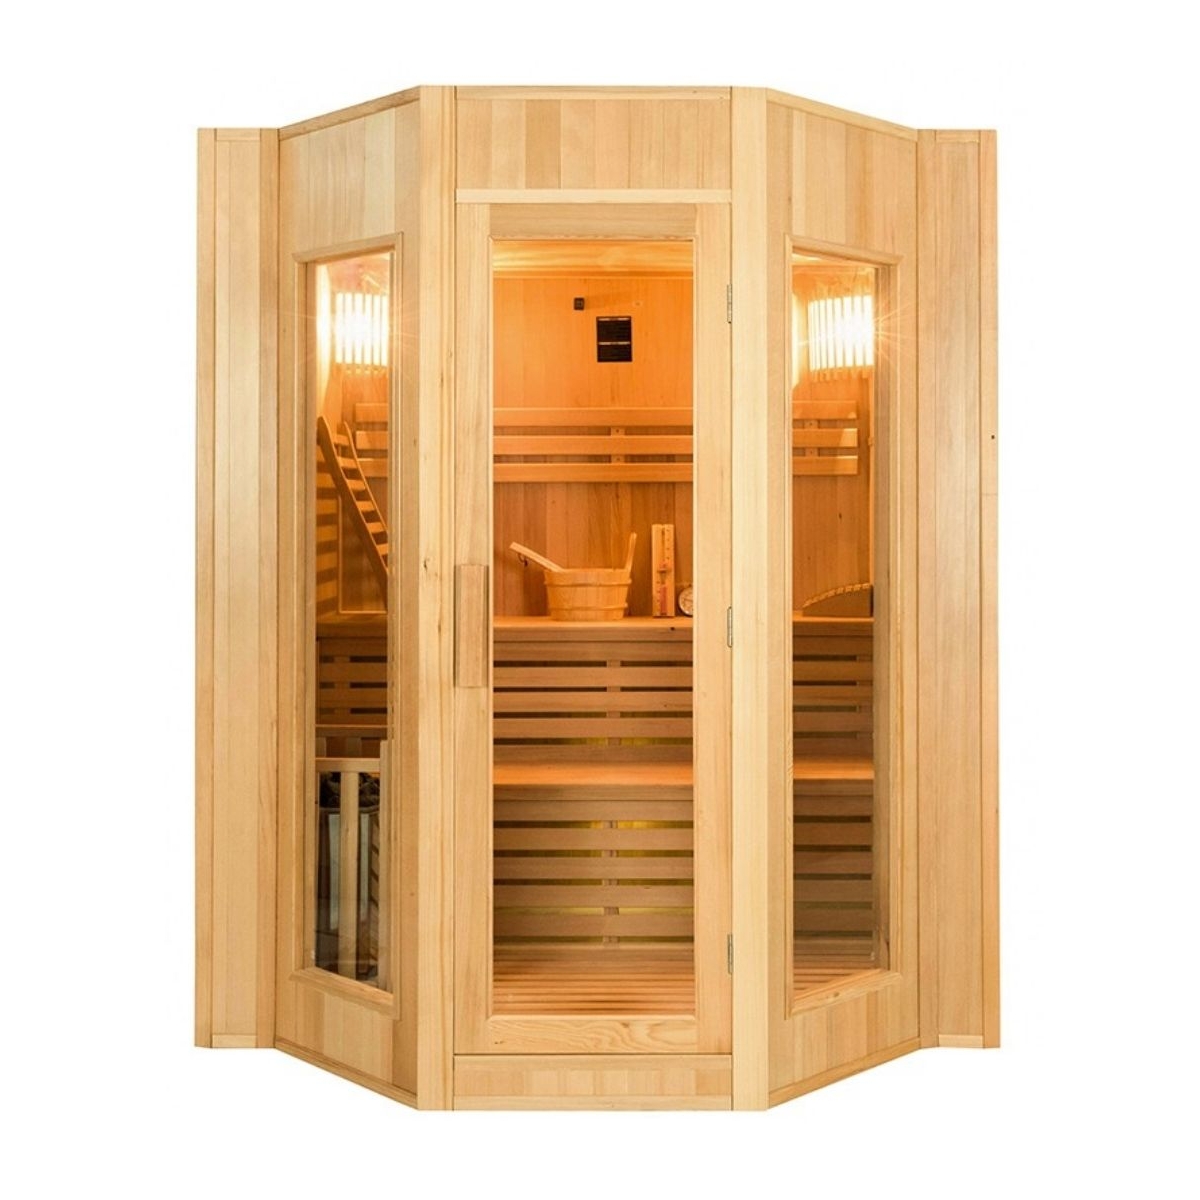 Sauna Vapeur Zen Traditionnel 4 personnes